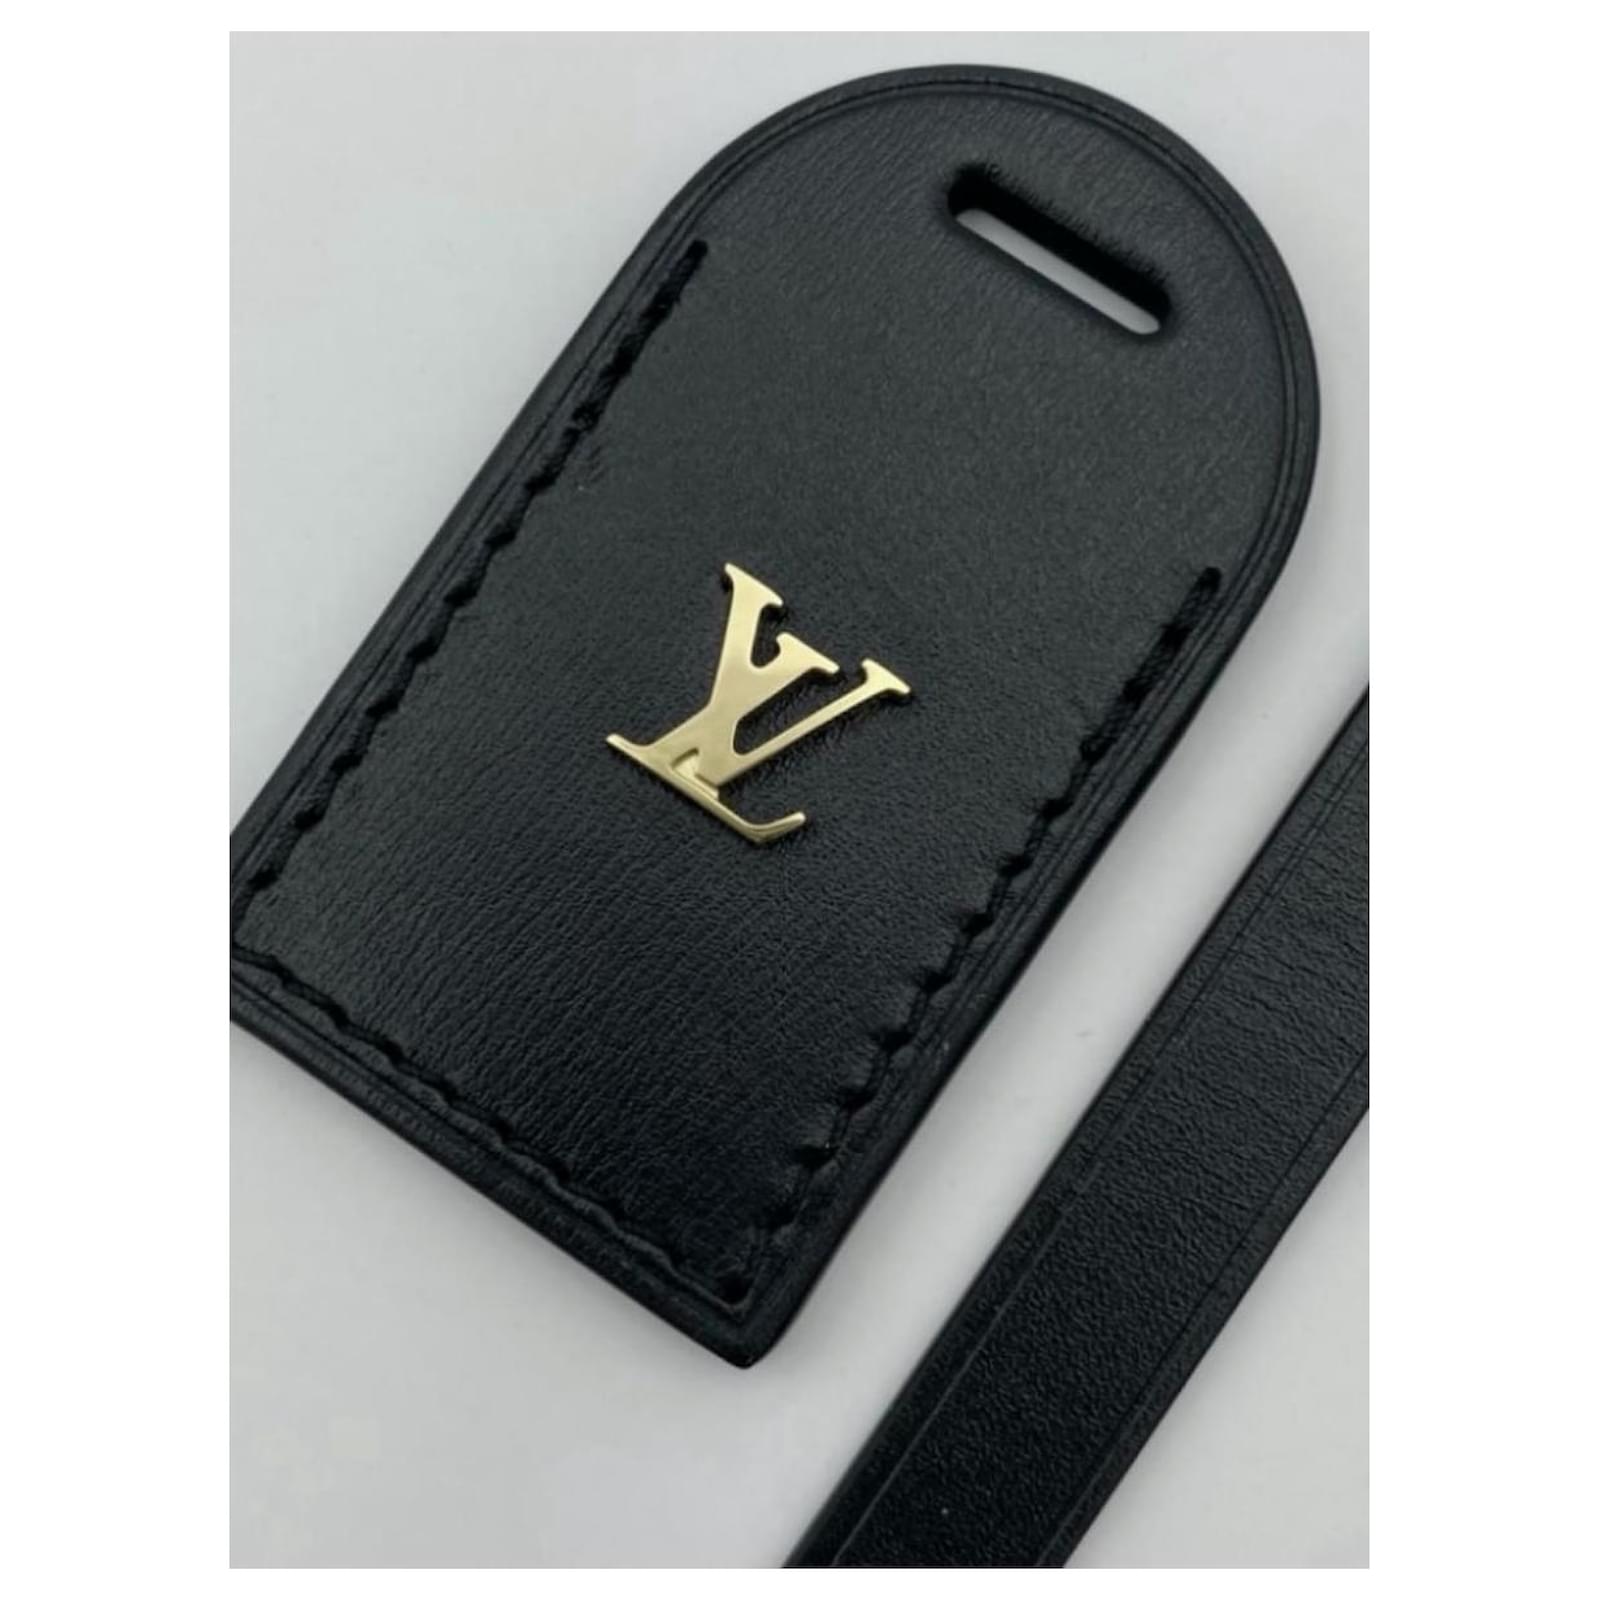 Louis Vuitton Black Leather Luggage Name Tag